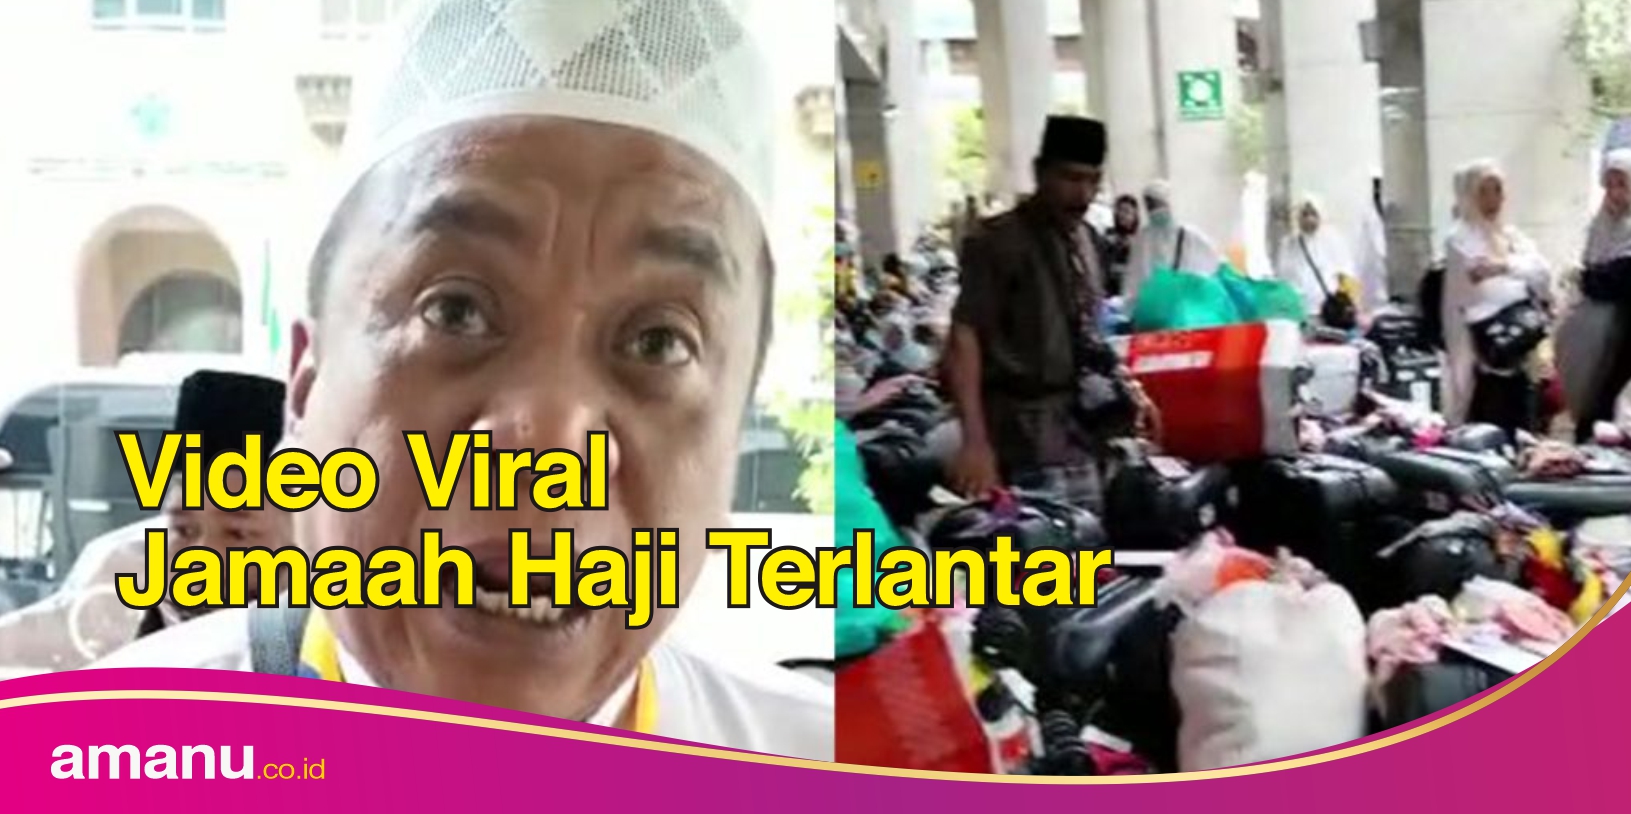 Video Viral Jamaah Haji Terlantar